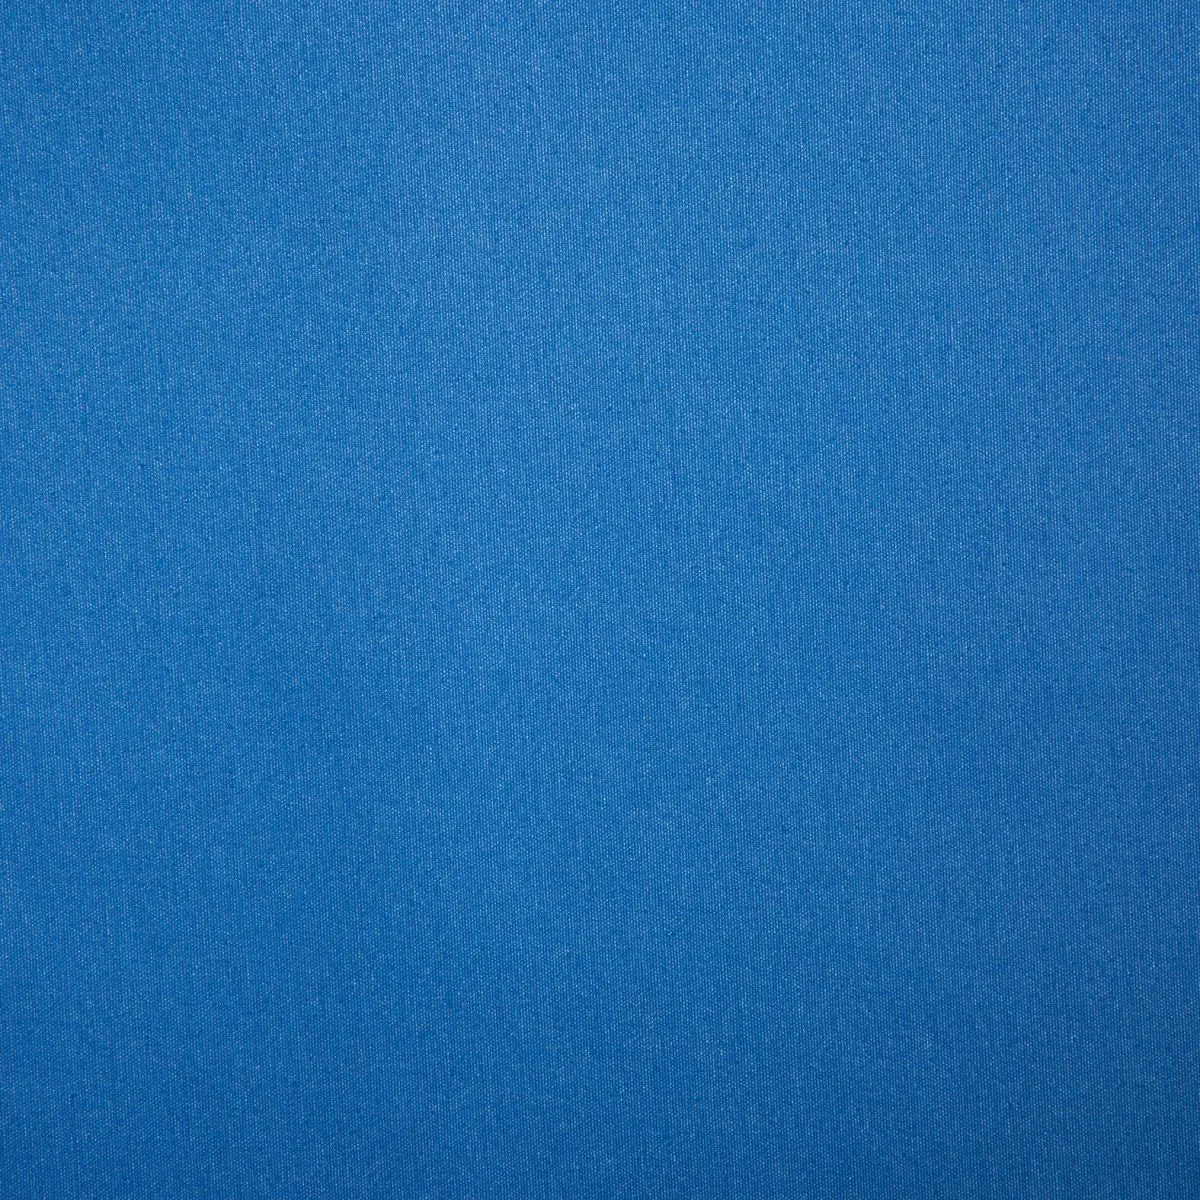 Slnečná strieška Playa - modrá, 400 x 240 cm